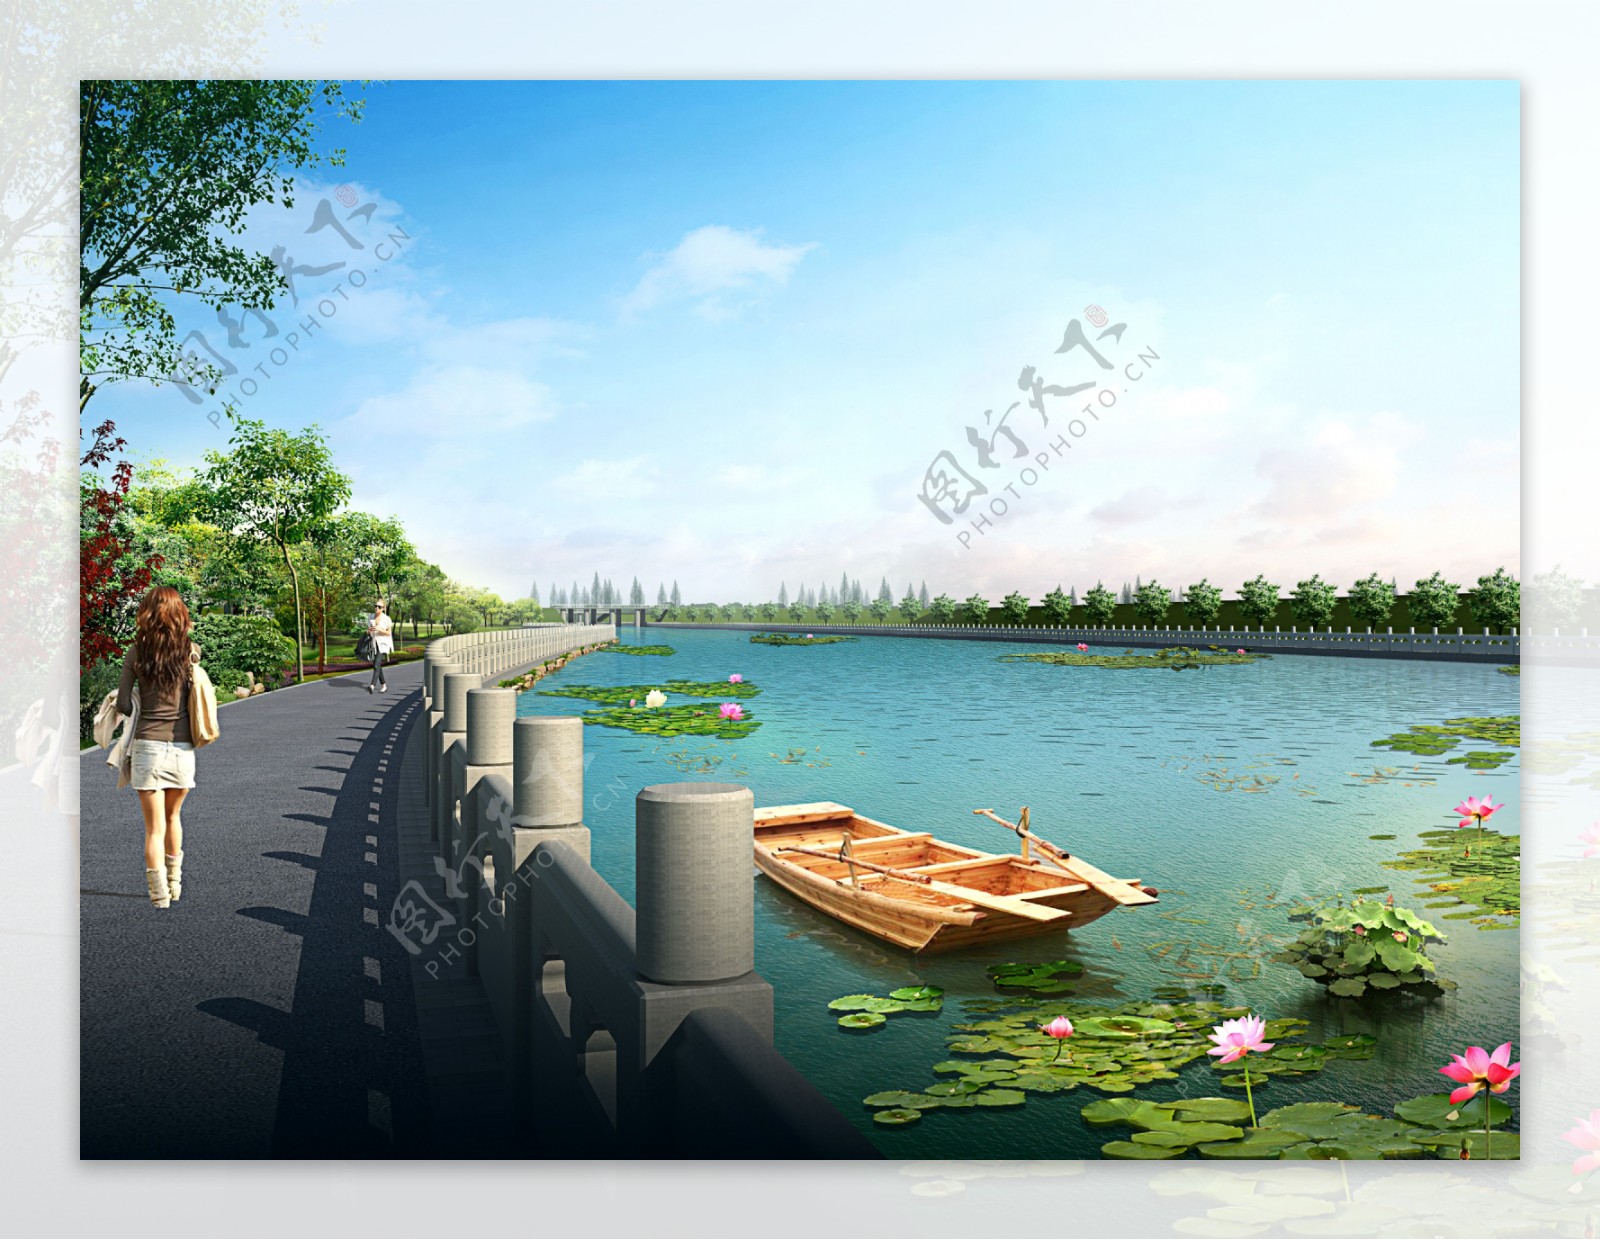 堤坝河岸设计图片